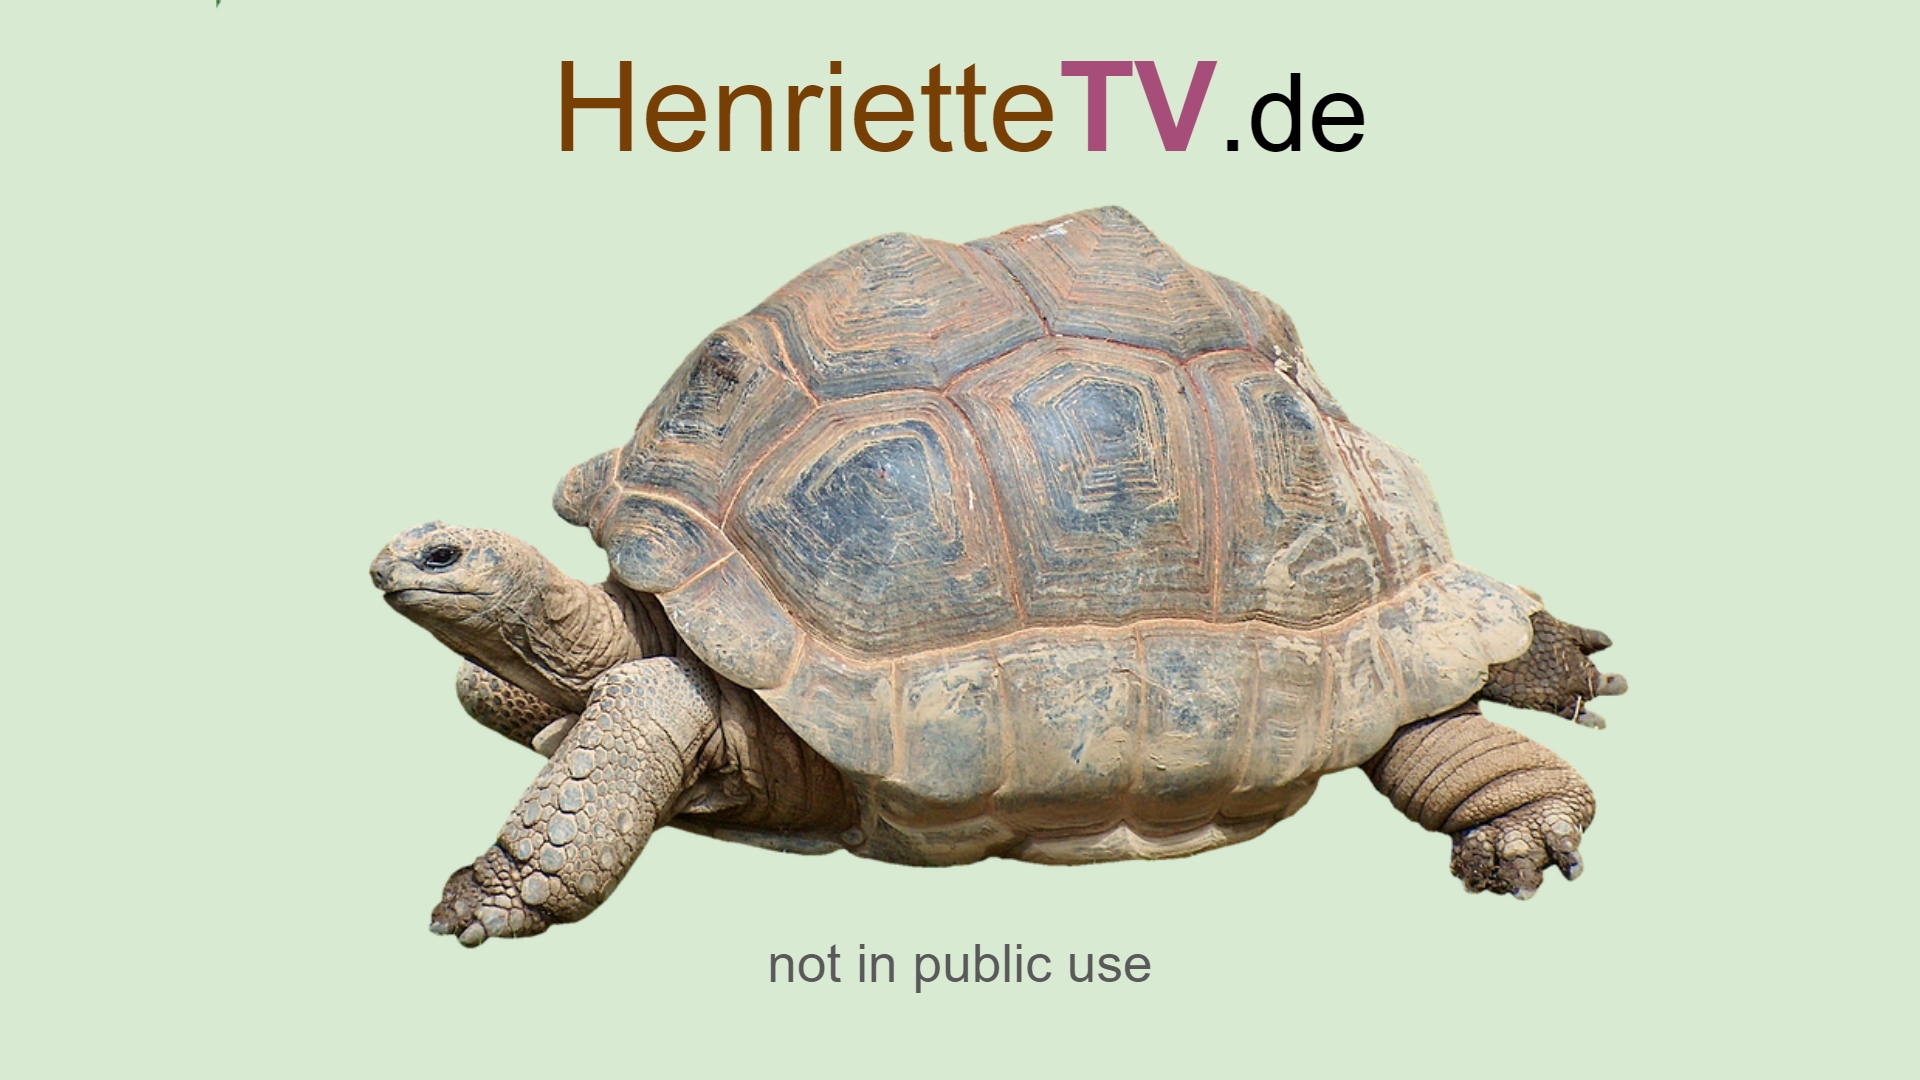 www.henriettetv.de